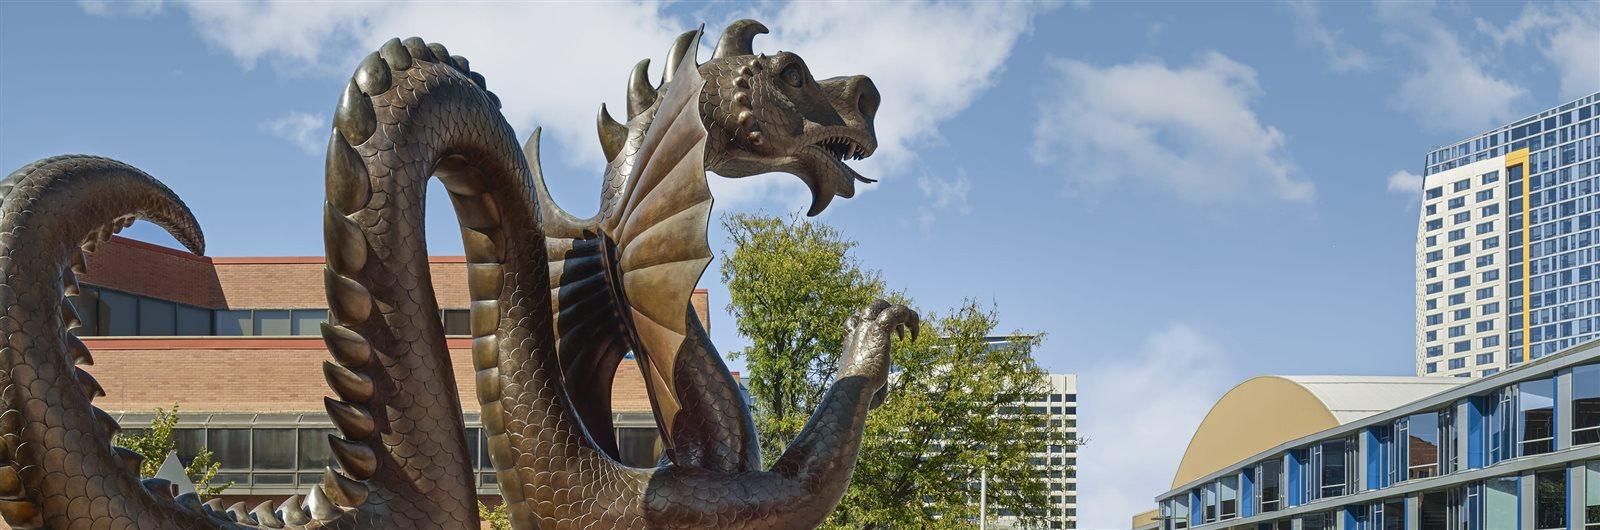 Drexel Dragon Statue